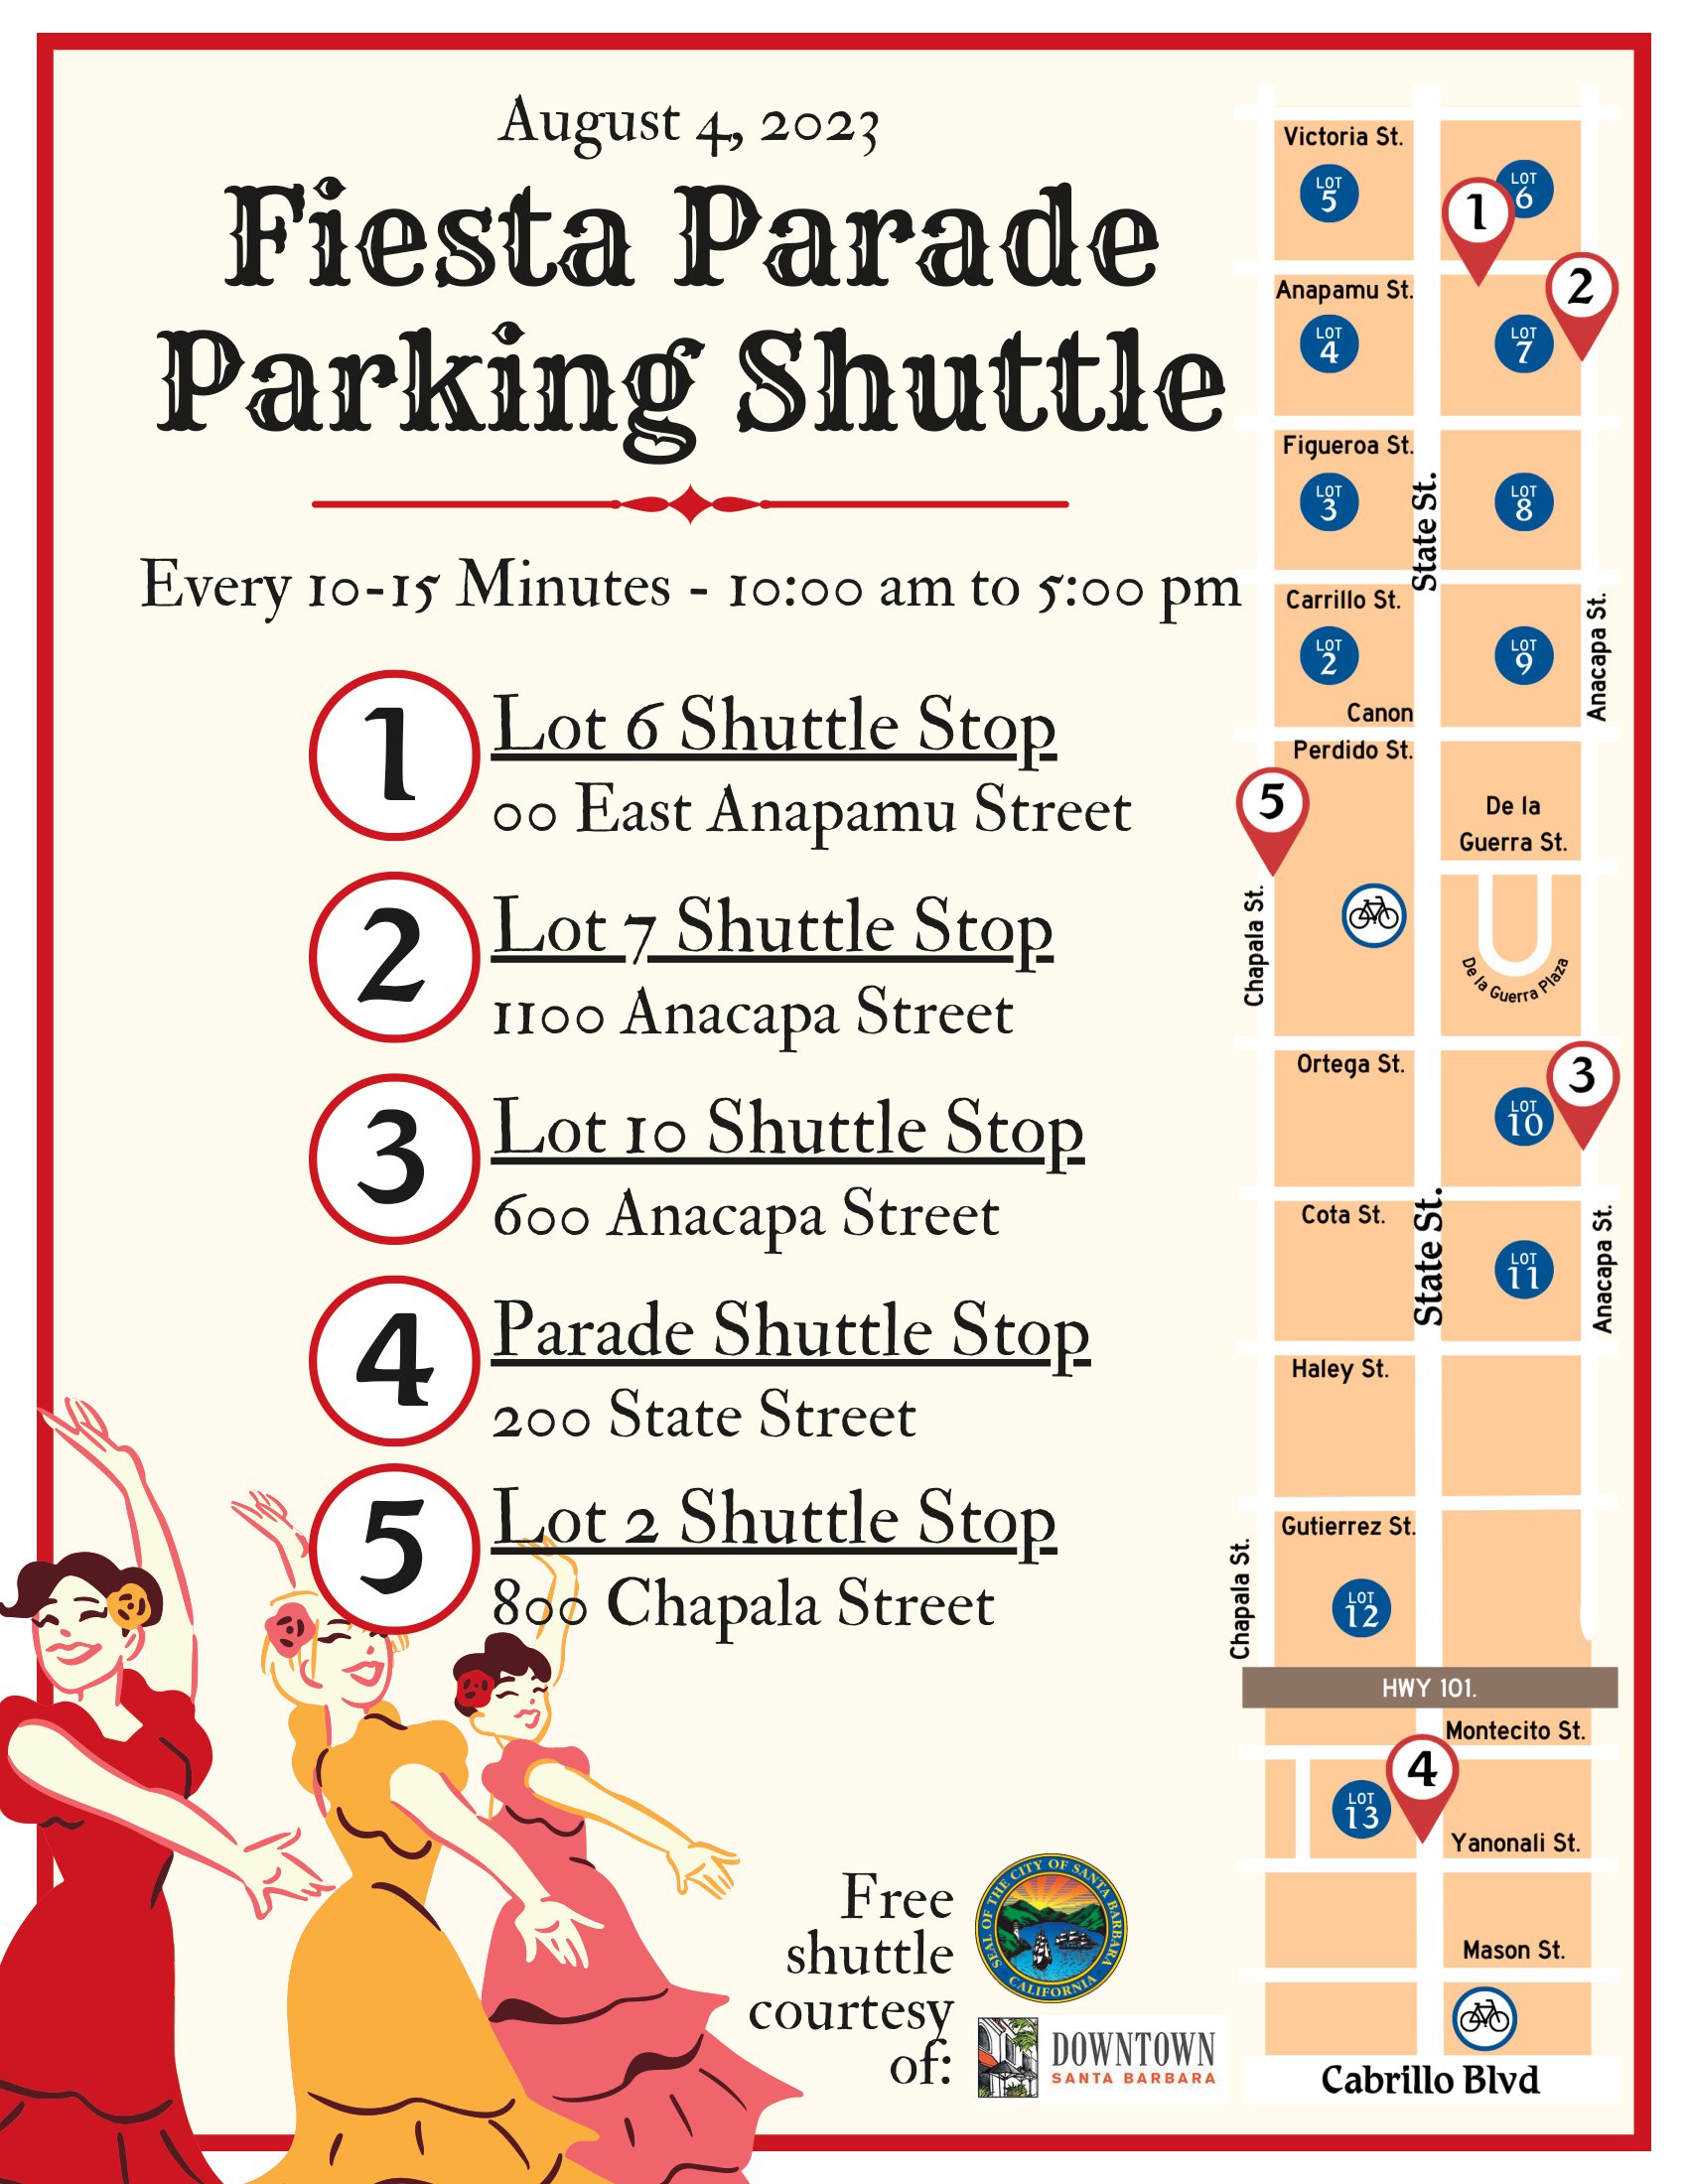 Fiesta Parade Parking Shuttle Map